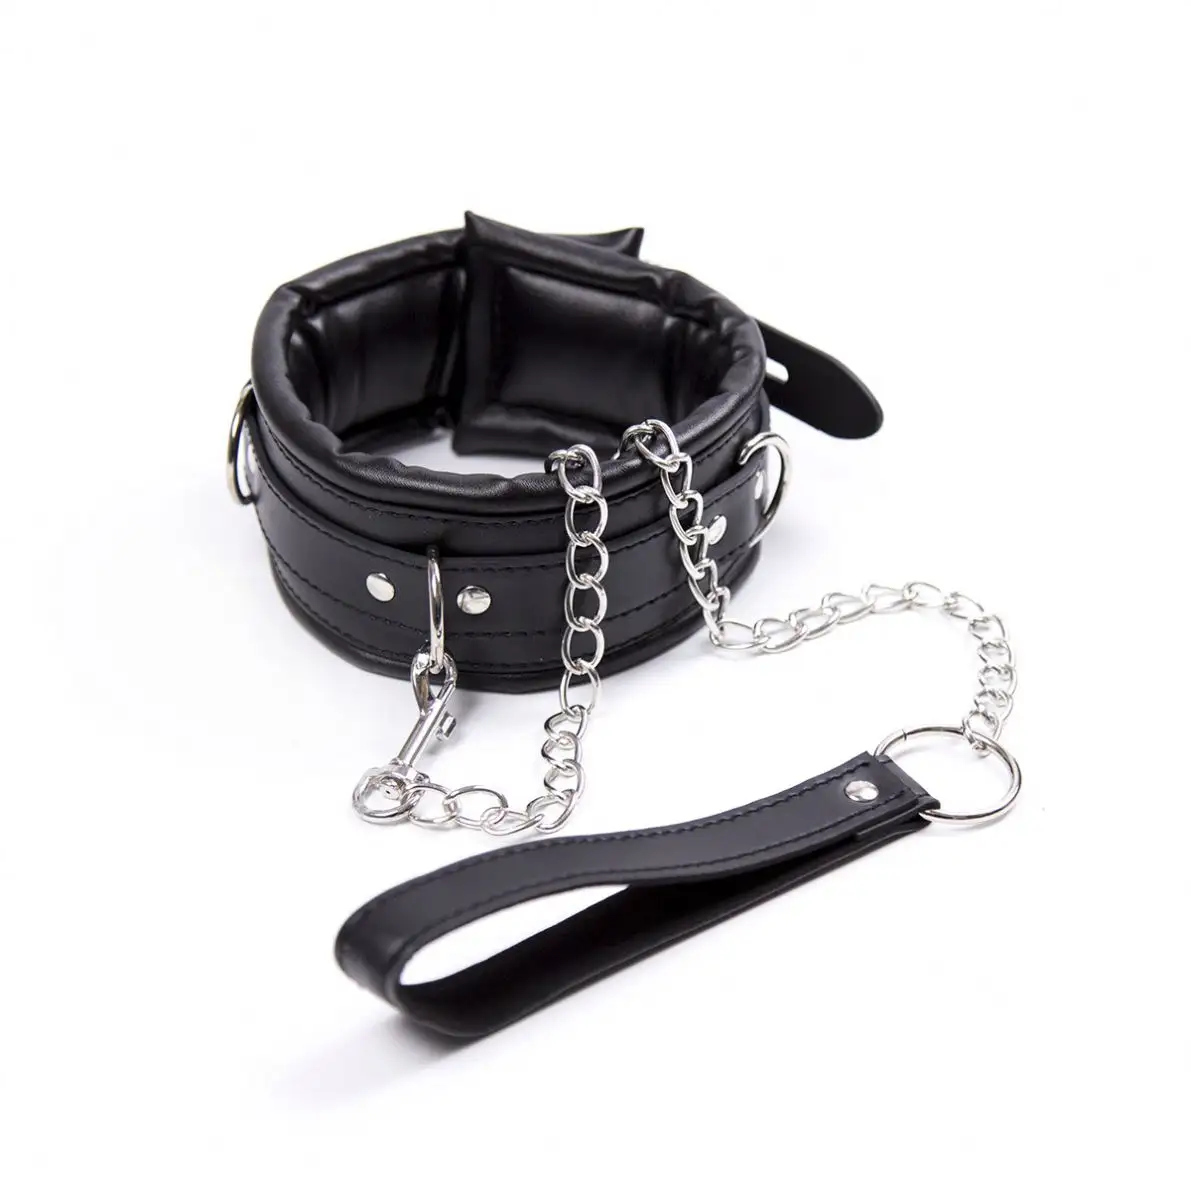 Kunstleder-Halsband mit Ketten verstellbar Gürtel Choker-Manschetten Halsband BDSM Fesselungs-Angebot unterwürfige Fesseln Sklave Fetish